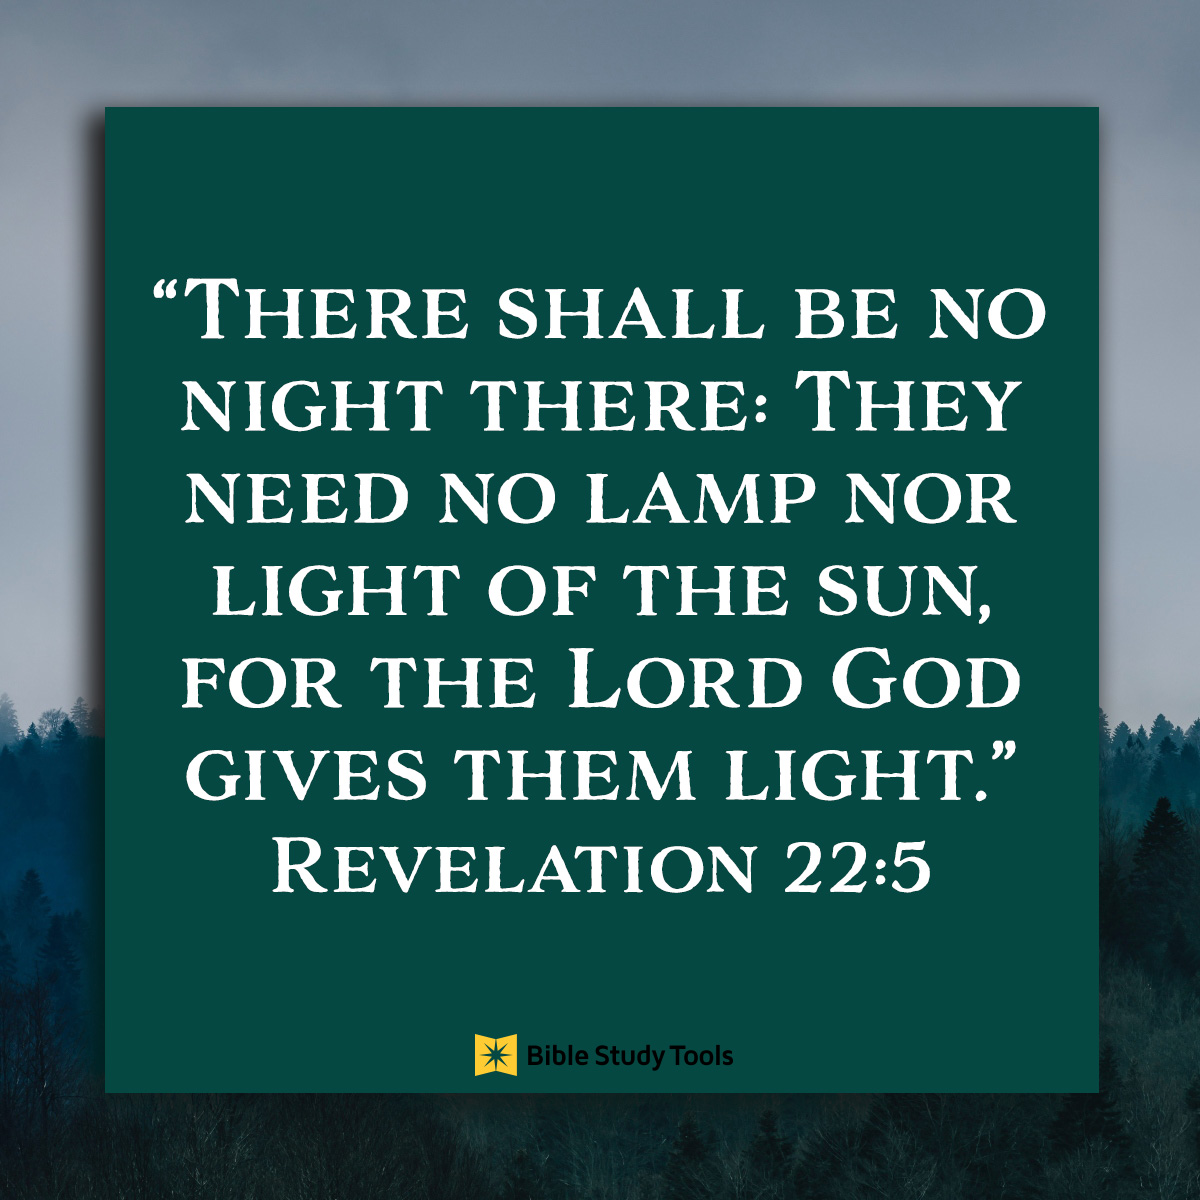 Inspirational image of Revelation 22:5